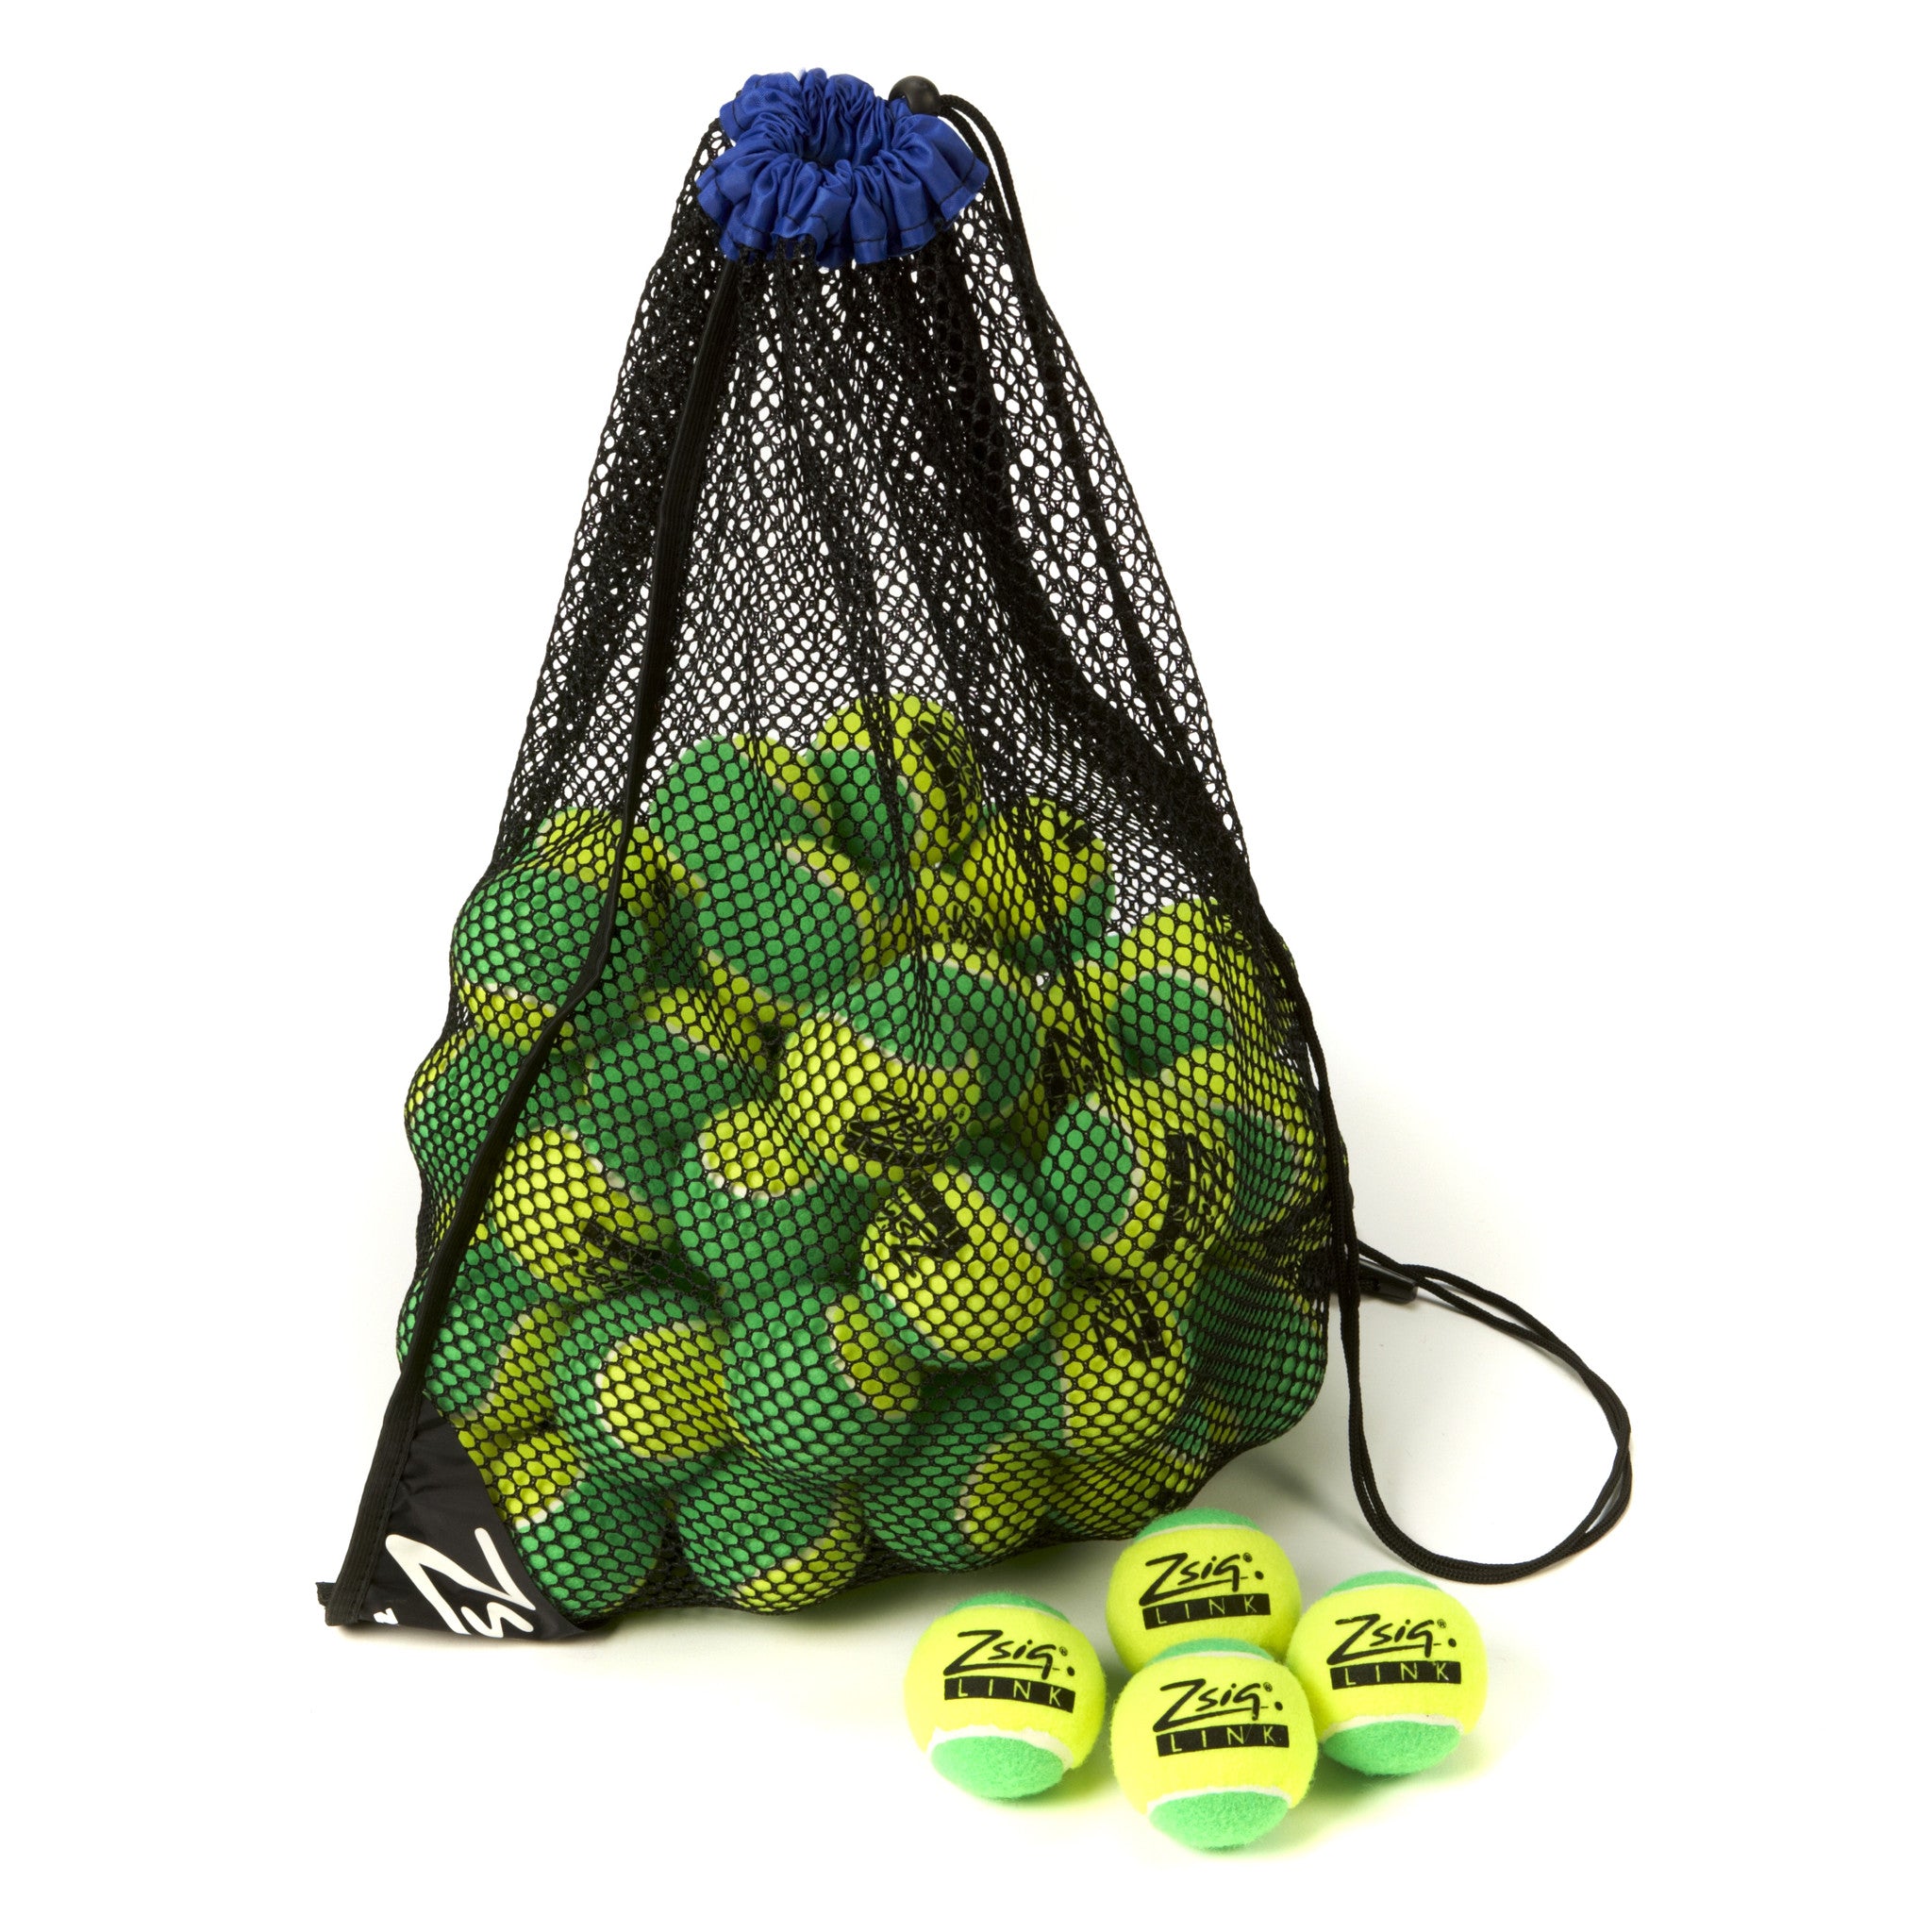 Green Mini Tennis Balls - carry bag of 5 dozen Zsig Link Green balls.